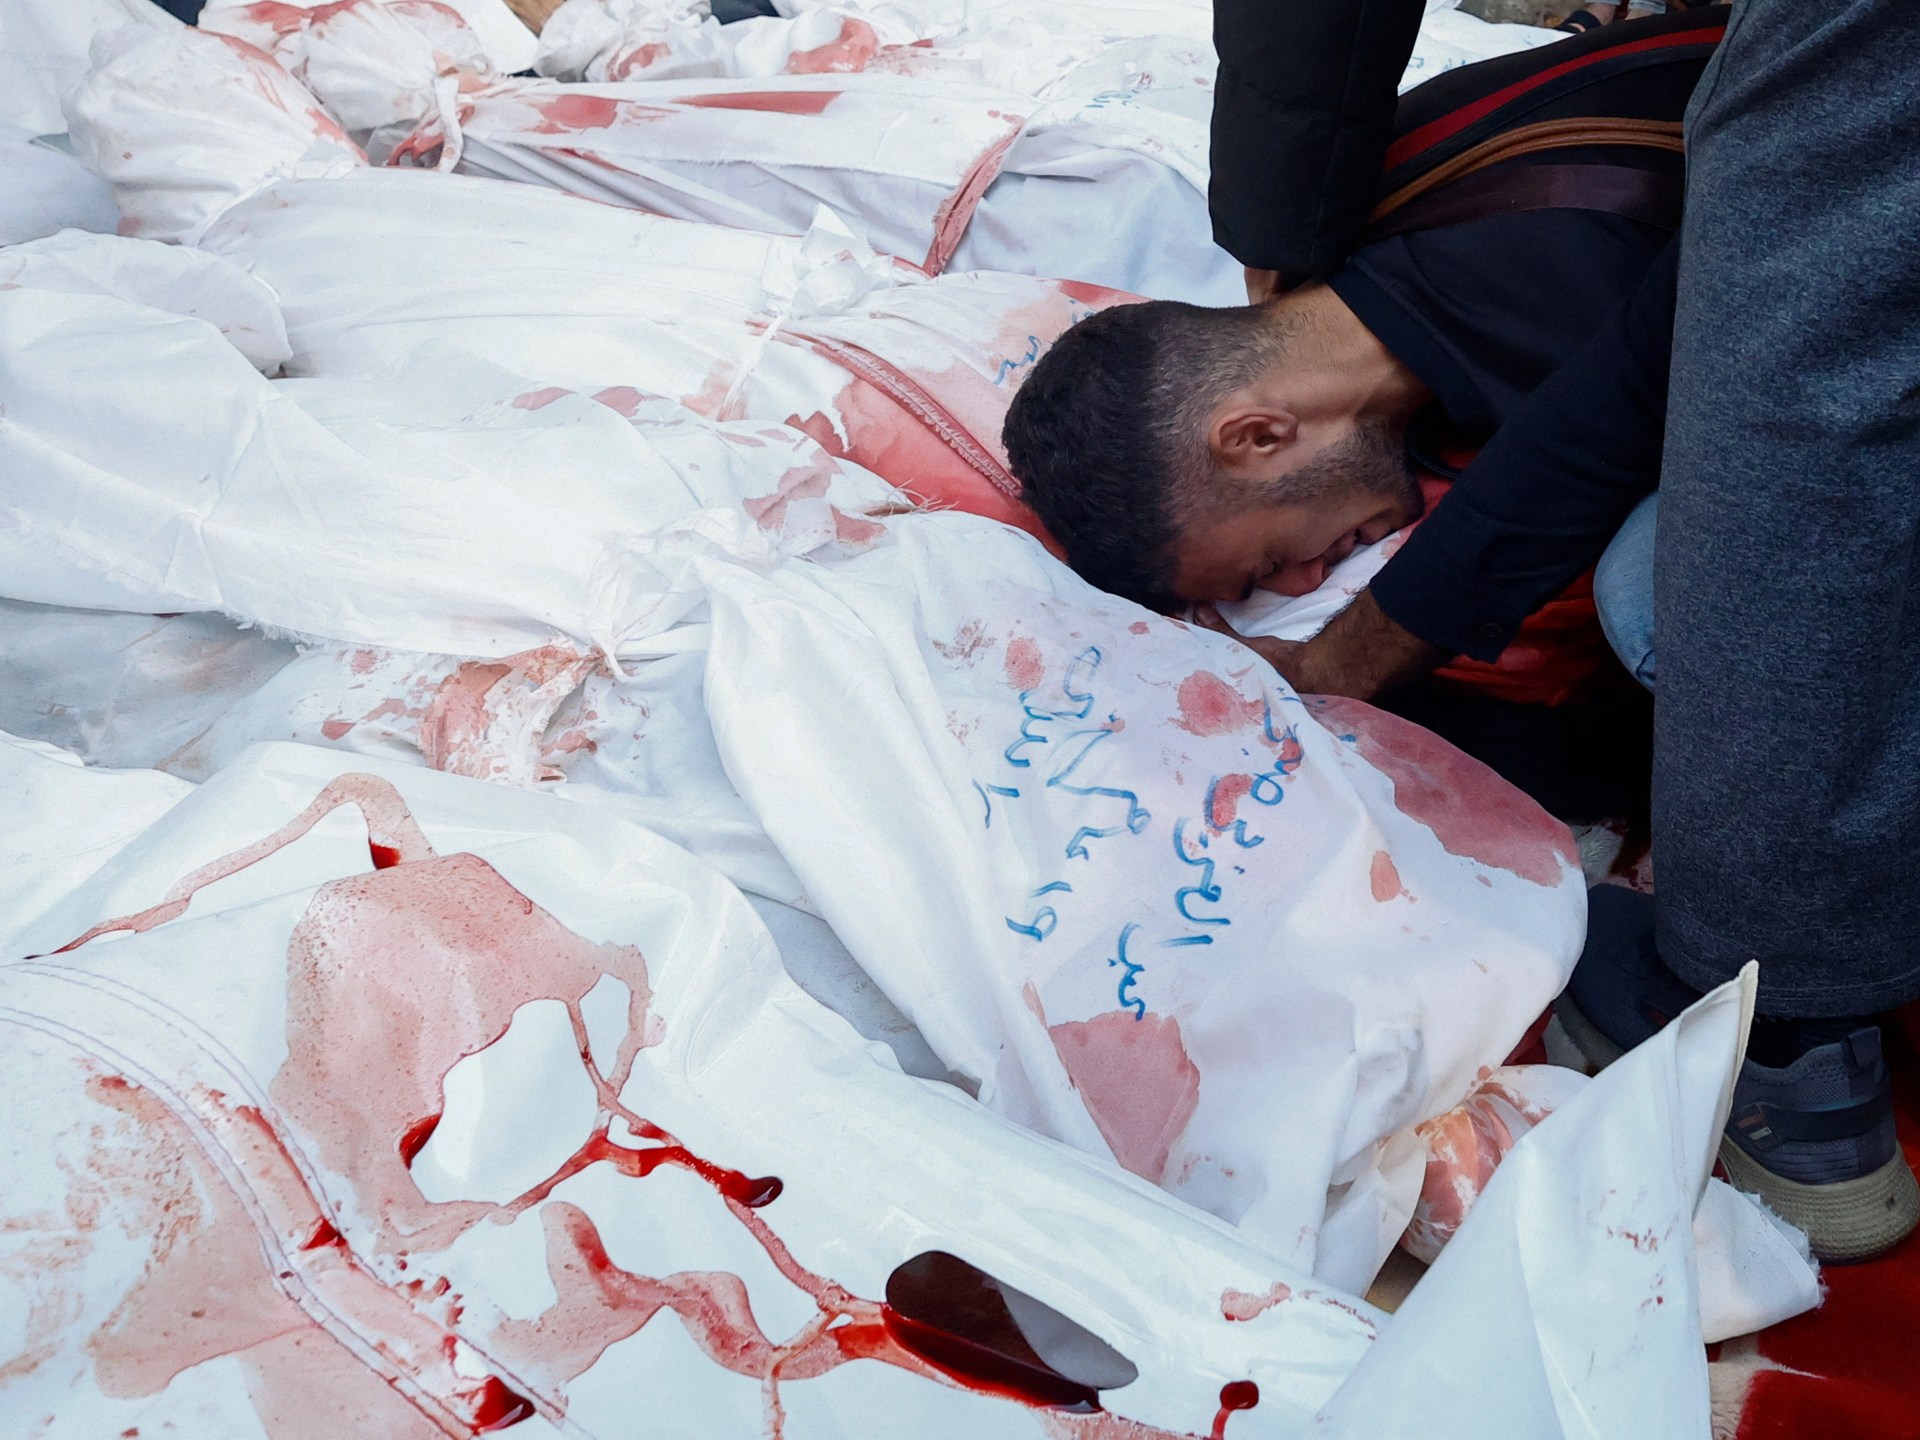 سي إن إن: إنقاذ محتجزَين إسرائيليَّين برفح ربما تسبب في مقتل 100 فلسطيني | أخبار – البوكس نيوز